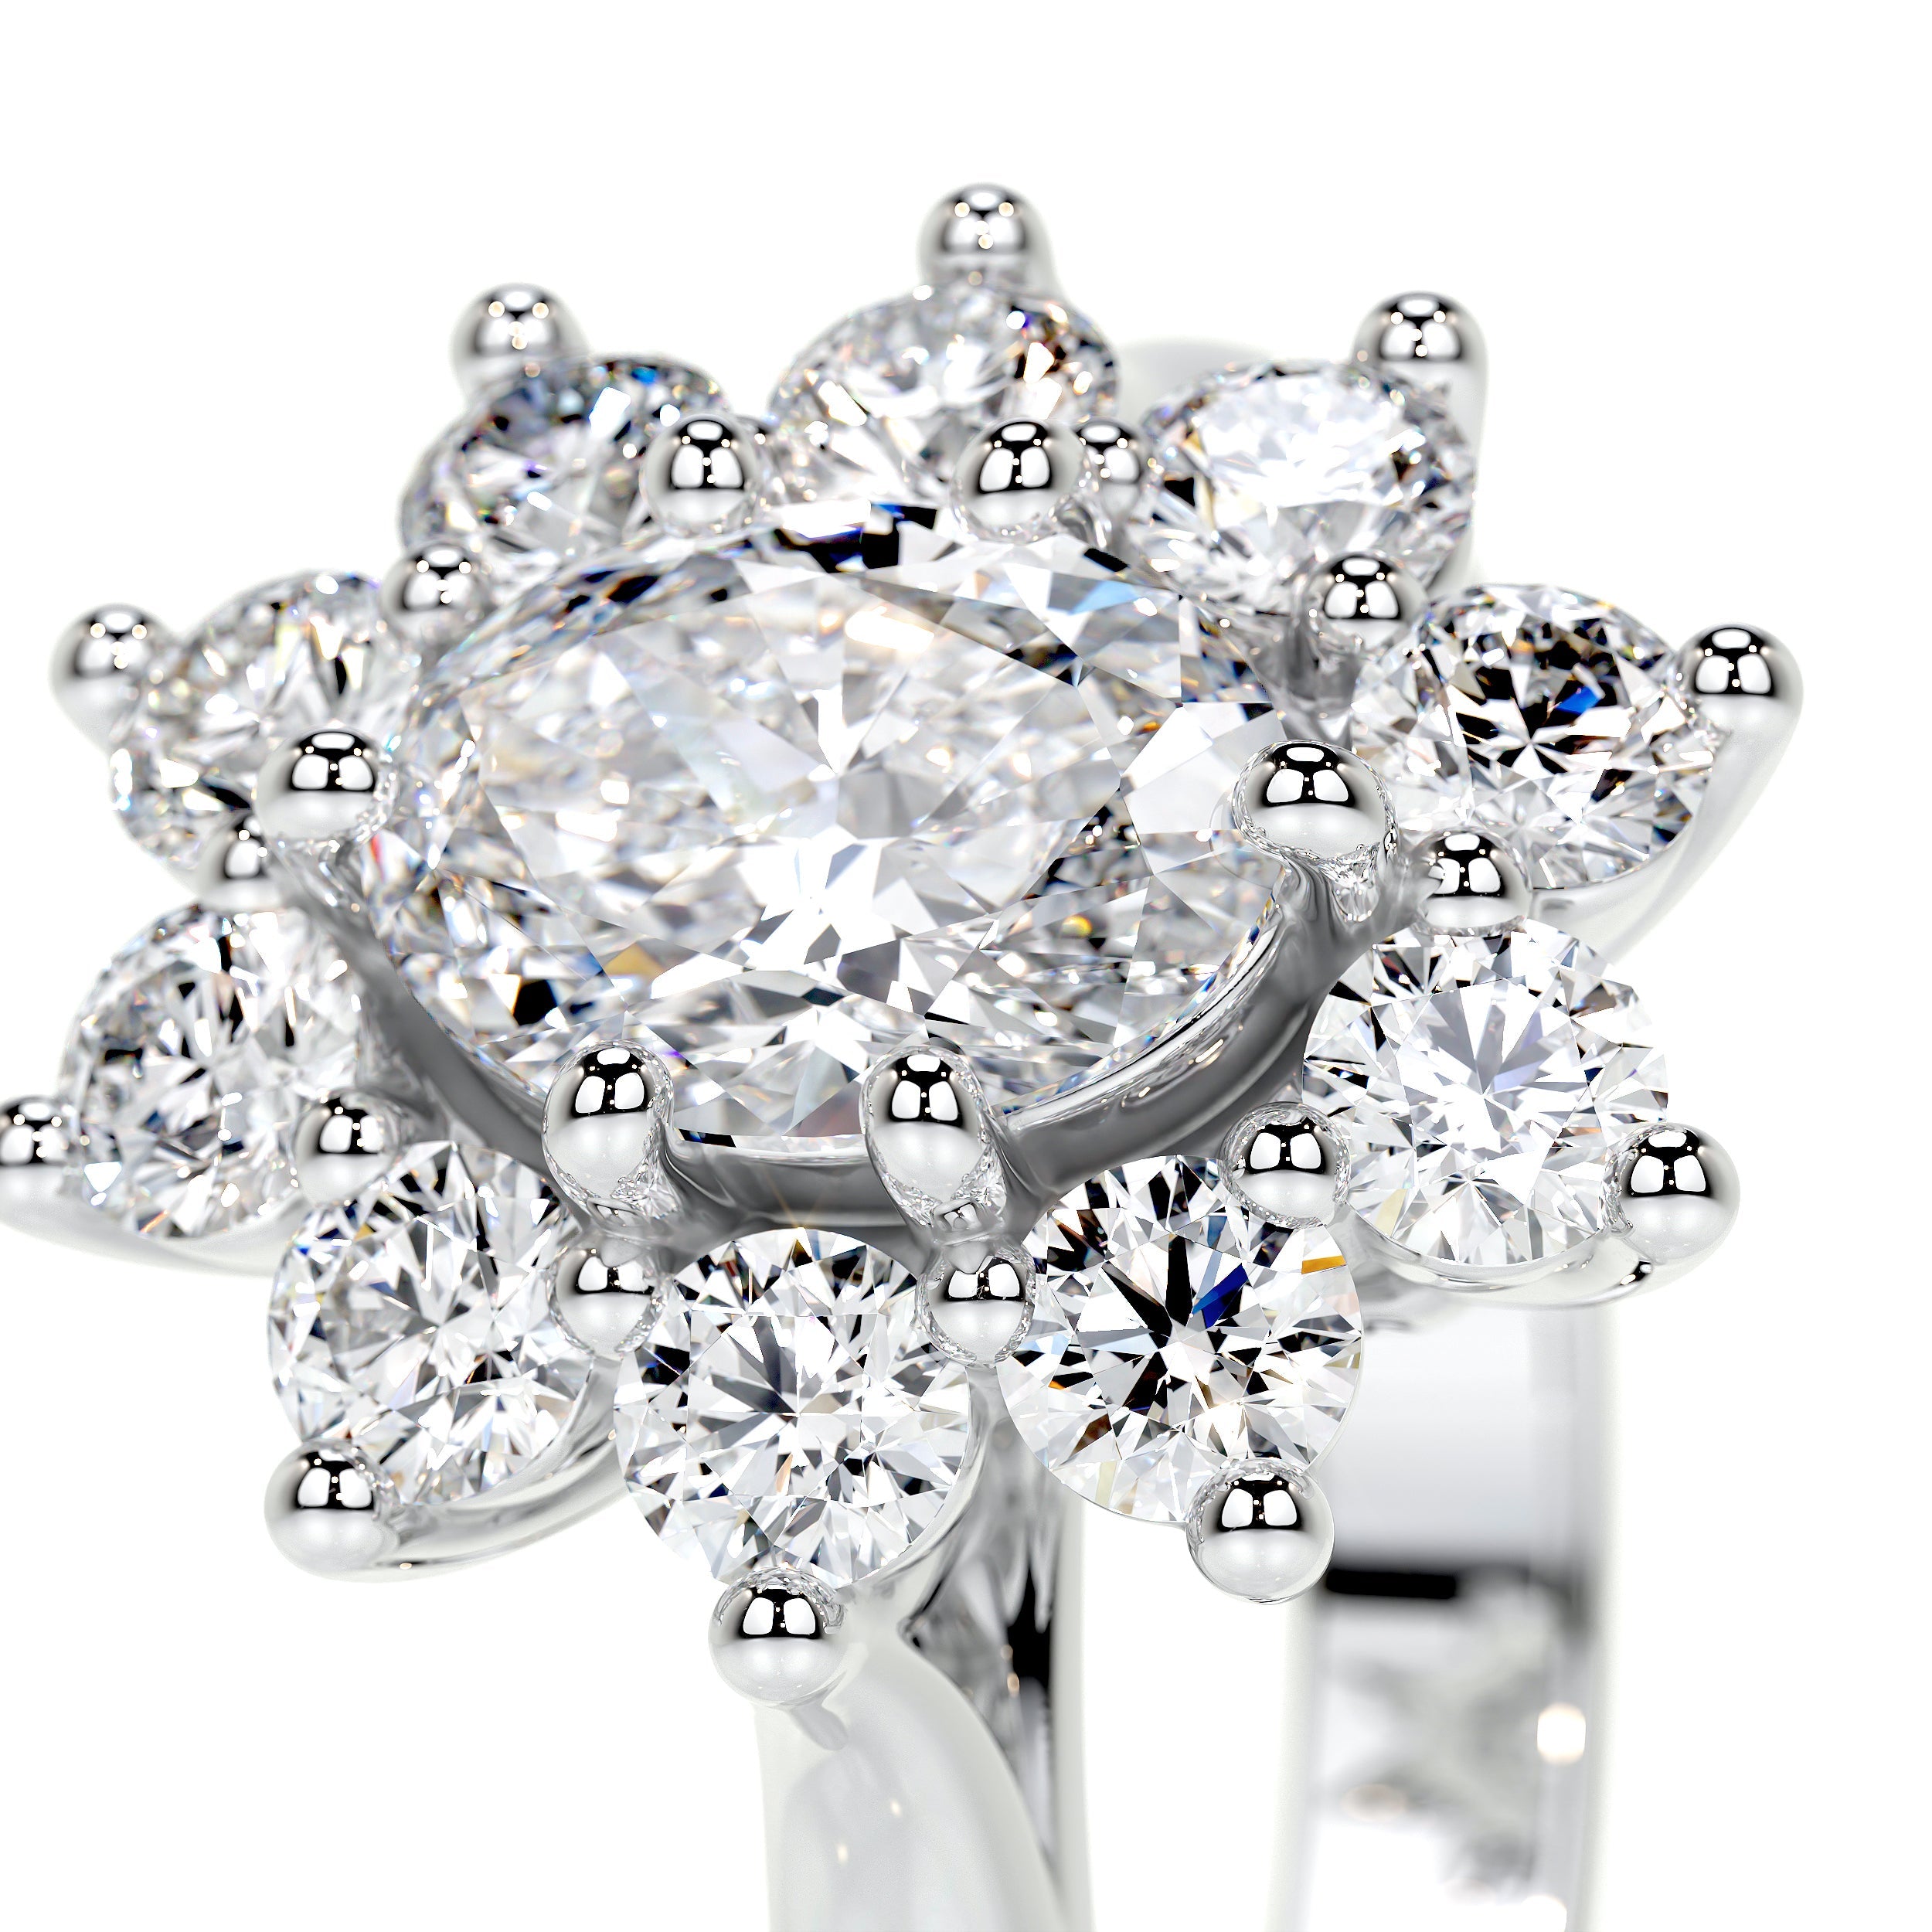 La Fleur Lab Grown Diamond Ring   (1.50 Carat) -18K White Gold